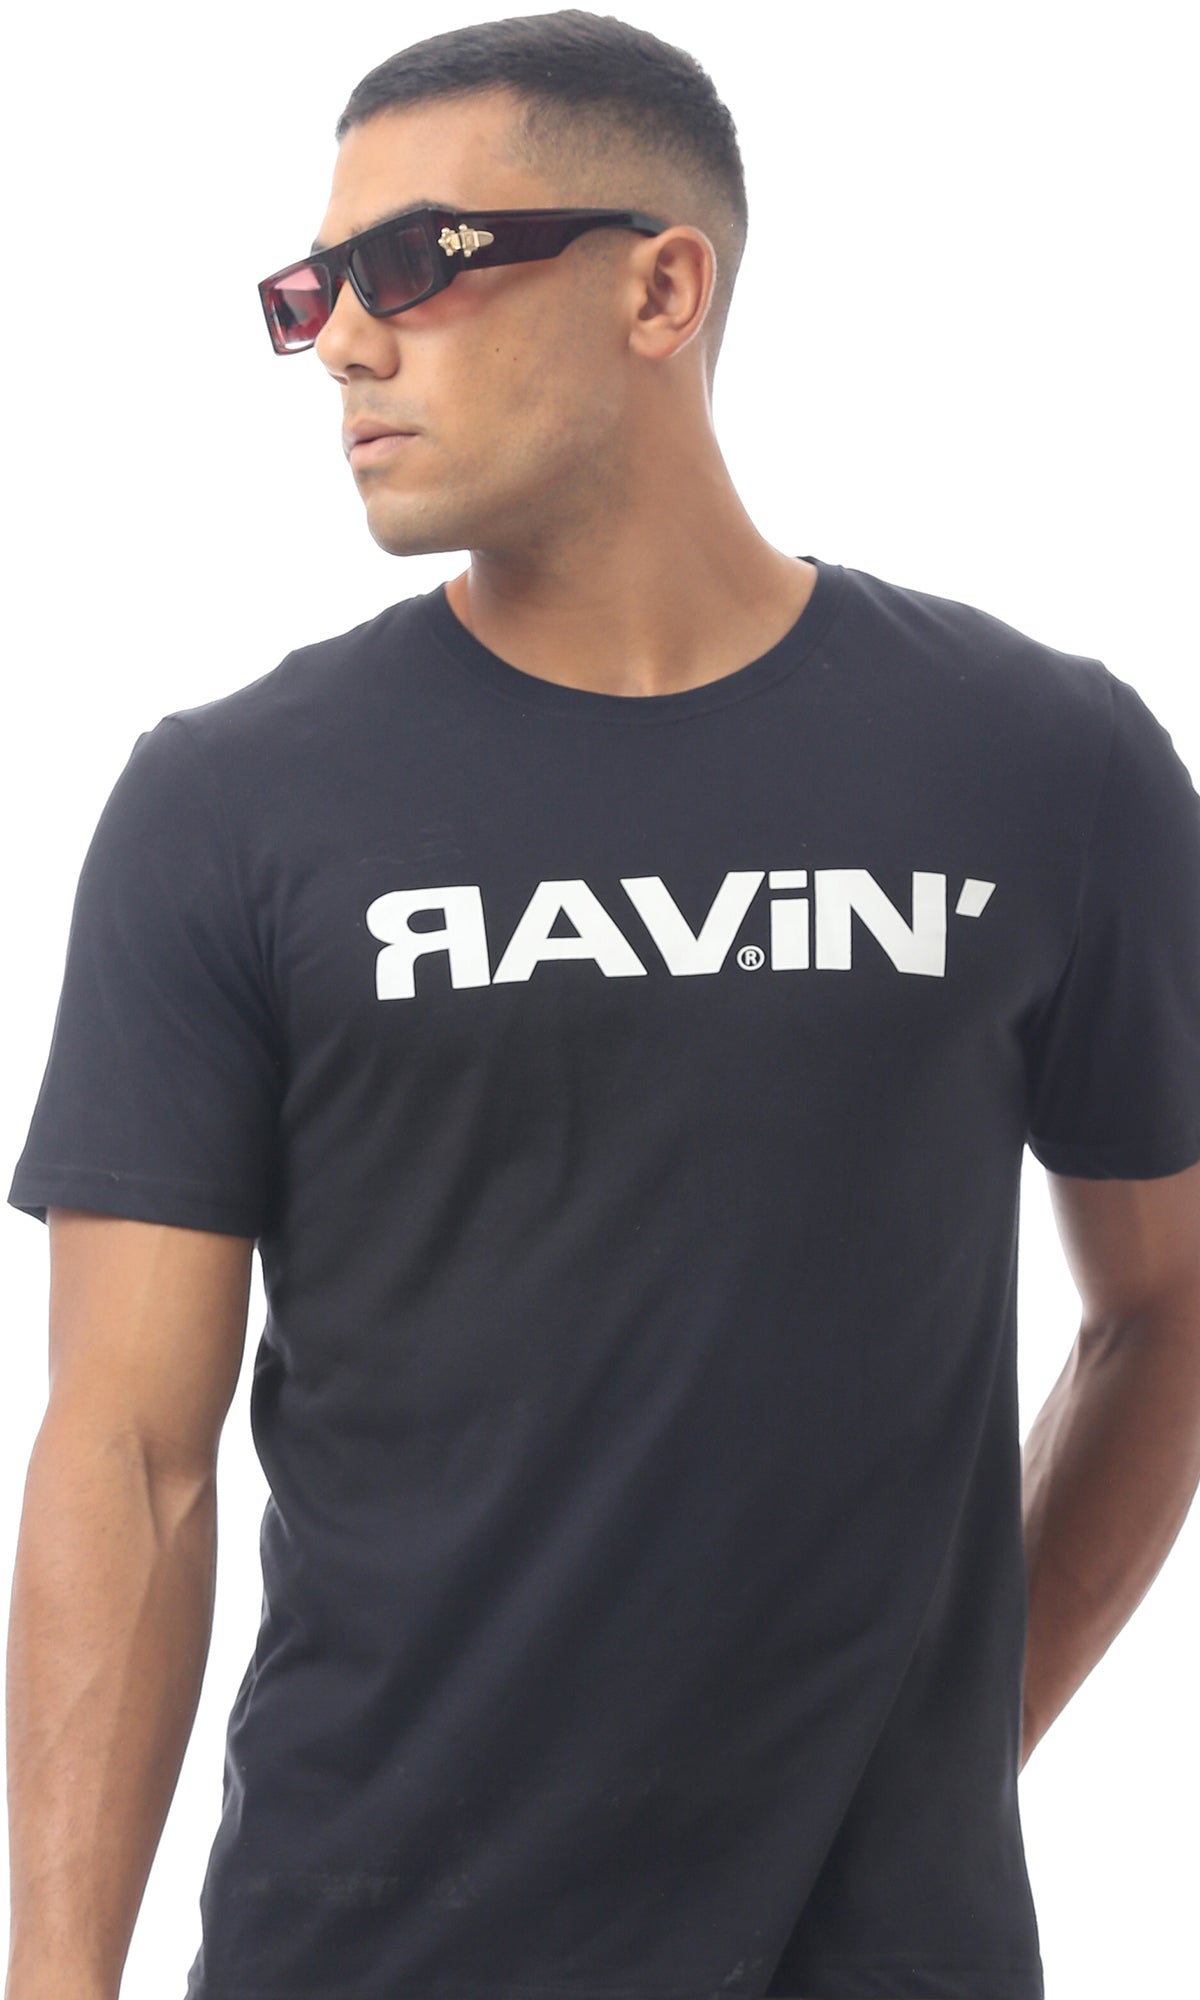 تيشيرت مطبوع "Ravin" أسود سهل الارتدا